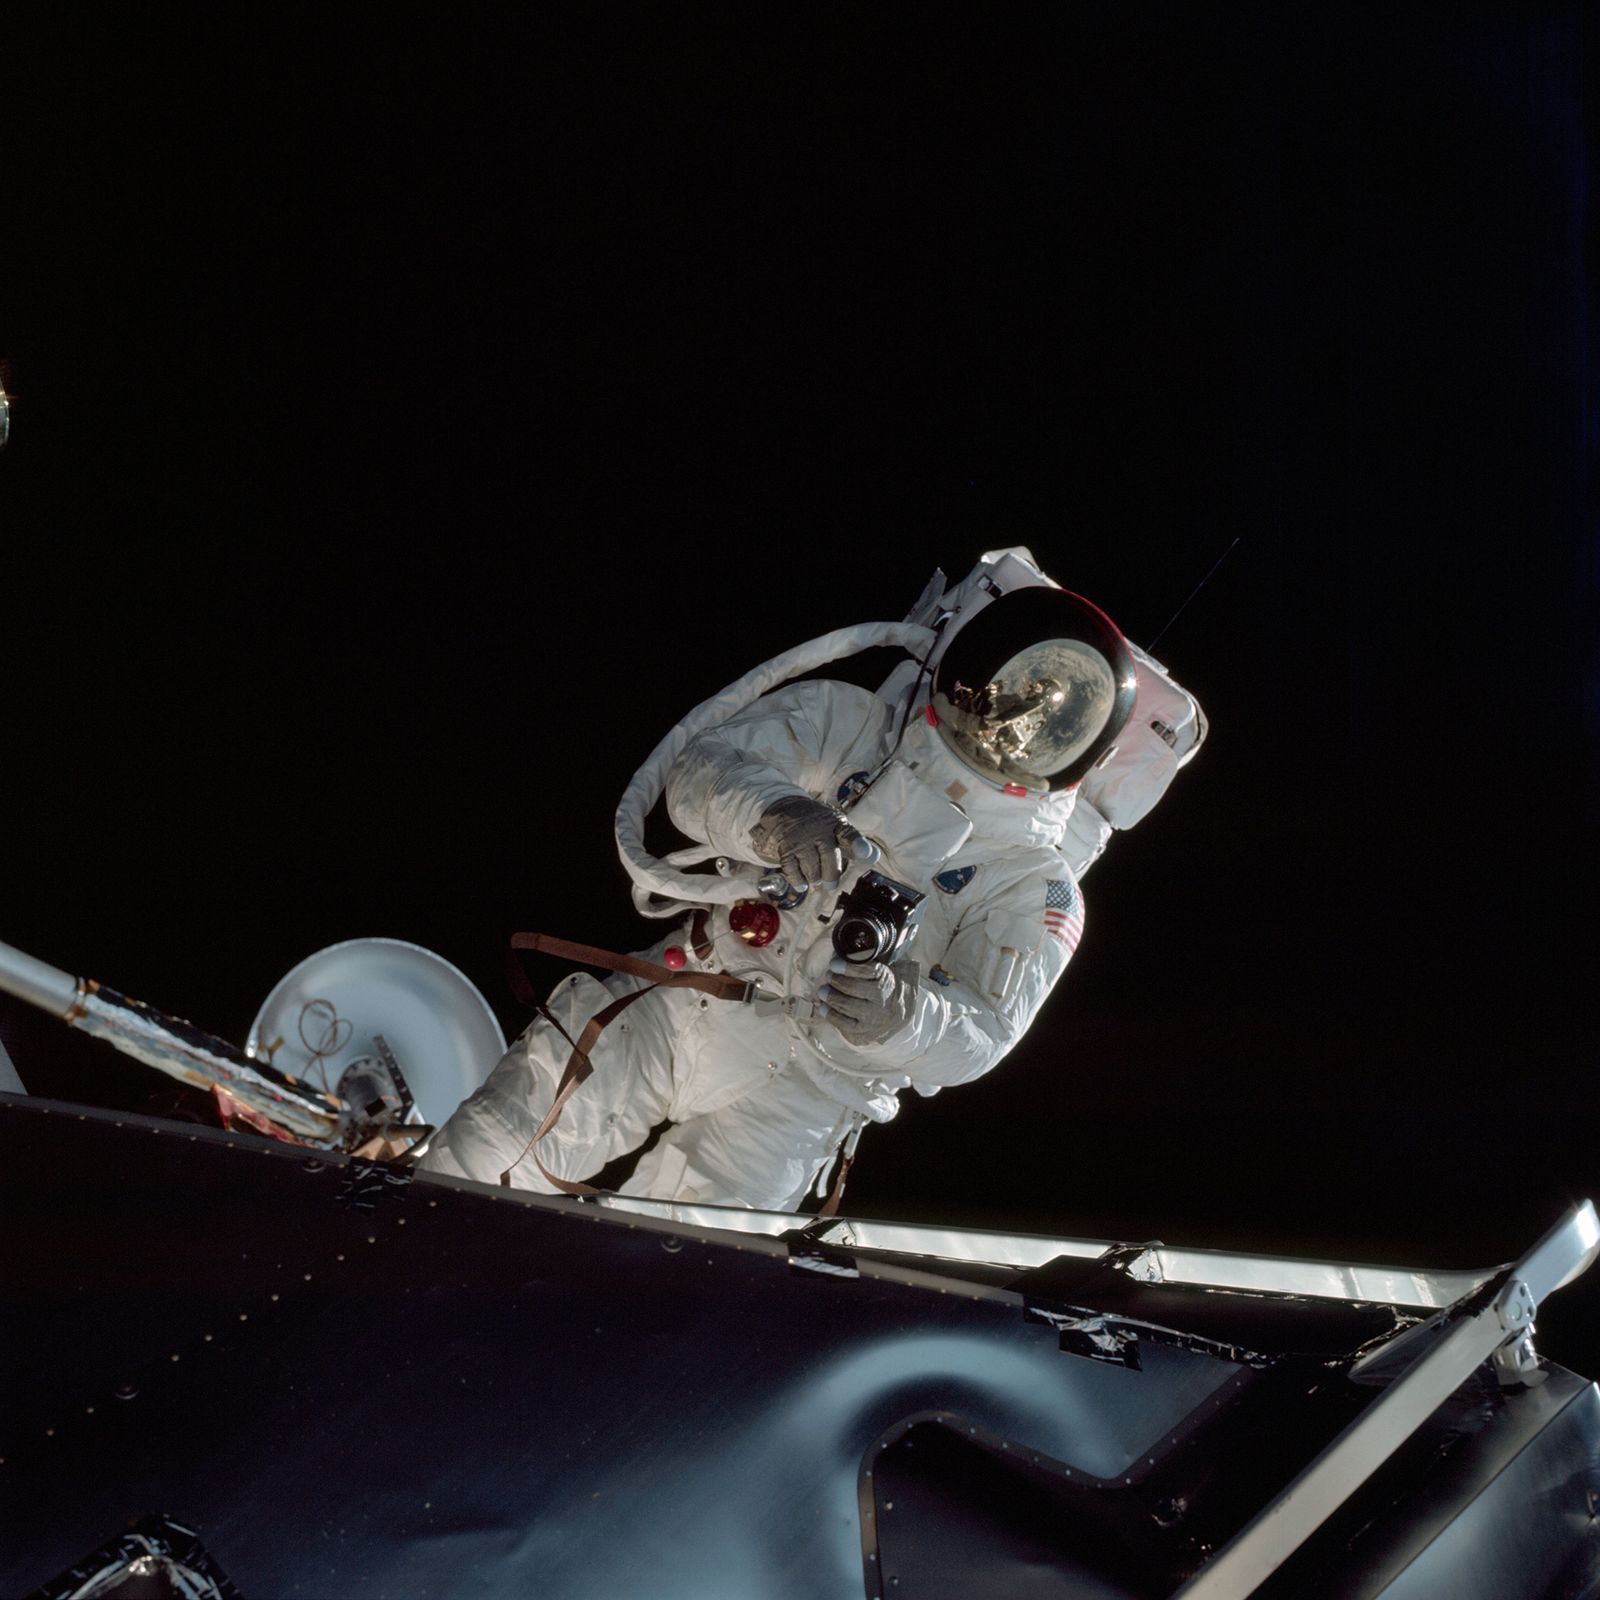 Astronaut Russell L. Schweickart drží v rukou fotoaparát během výstupu do volného vesmíru. Snímek je z mise Apollo 9 (1969)